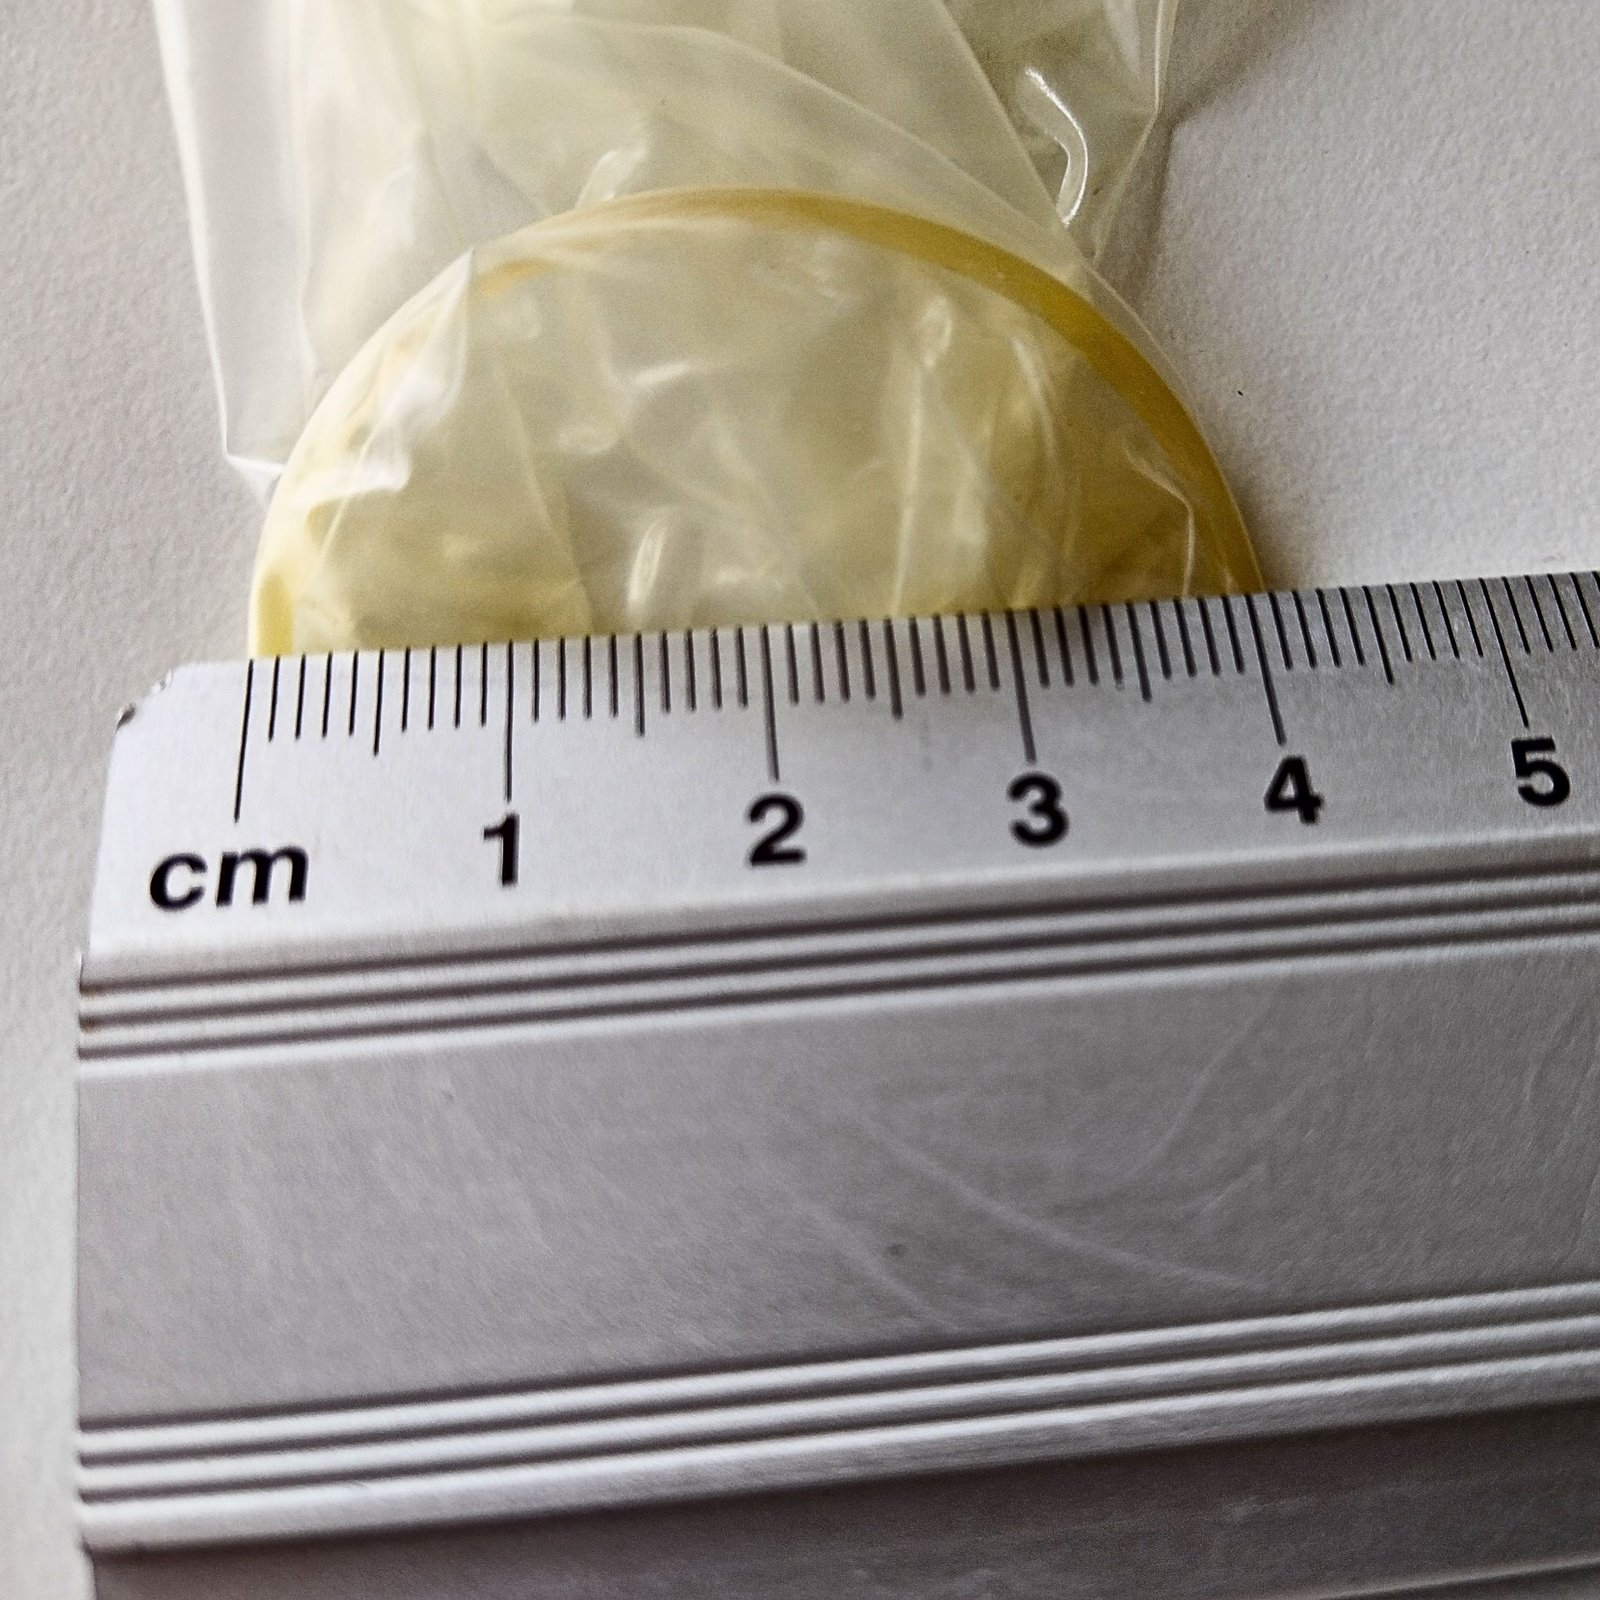 Měření průměru kondomu